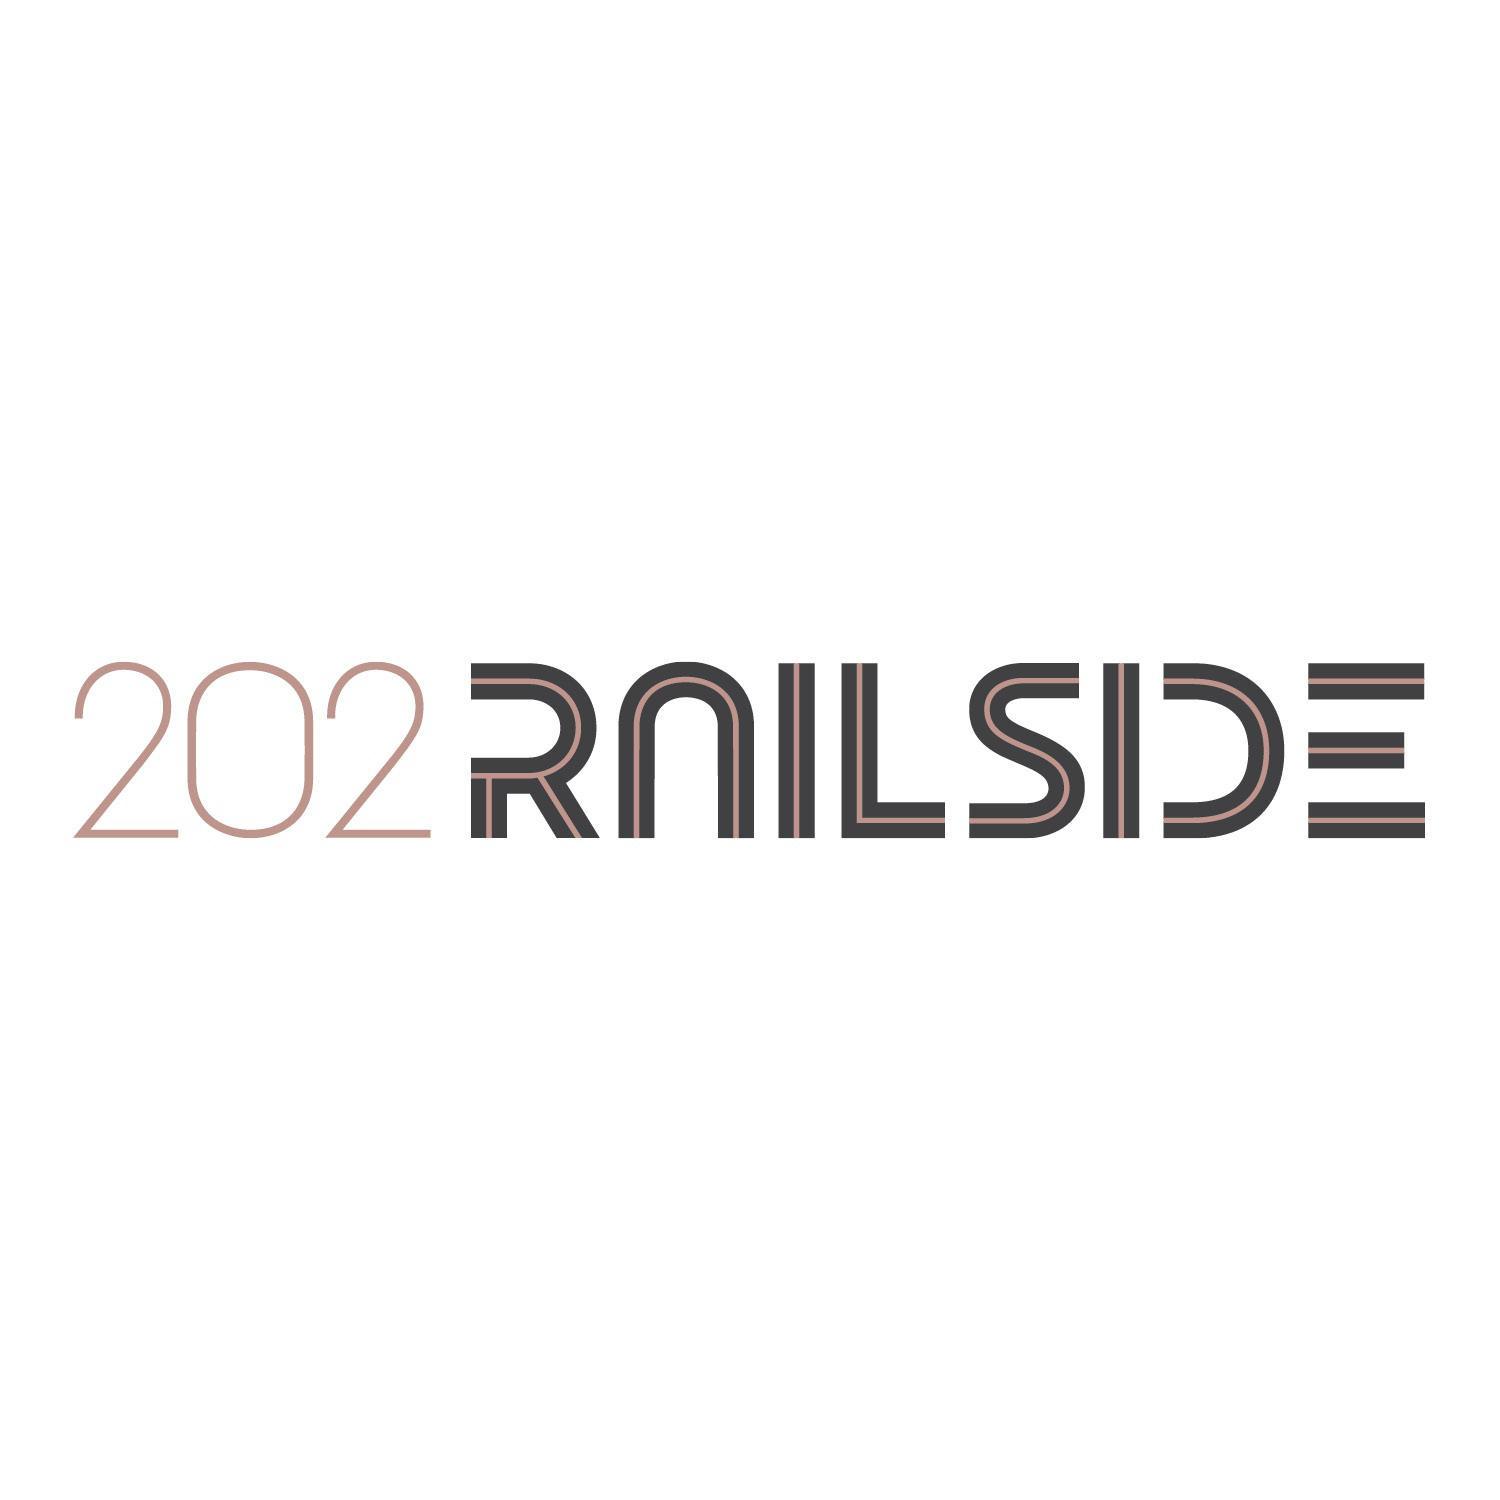 202 Railside - Springdale, AR 72764 - (479)379-6286 | ShowMeLocal.com